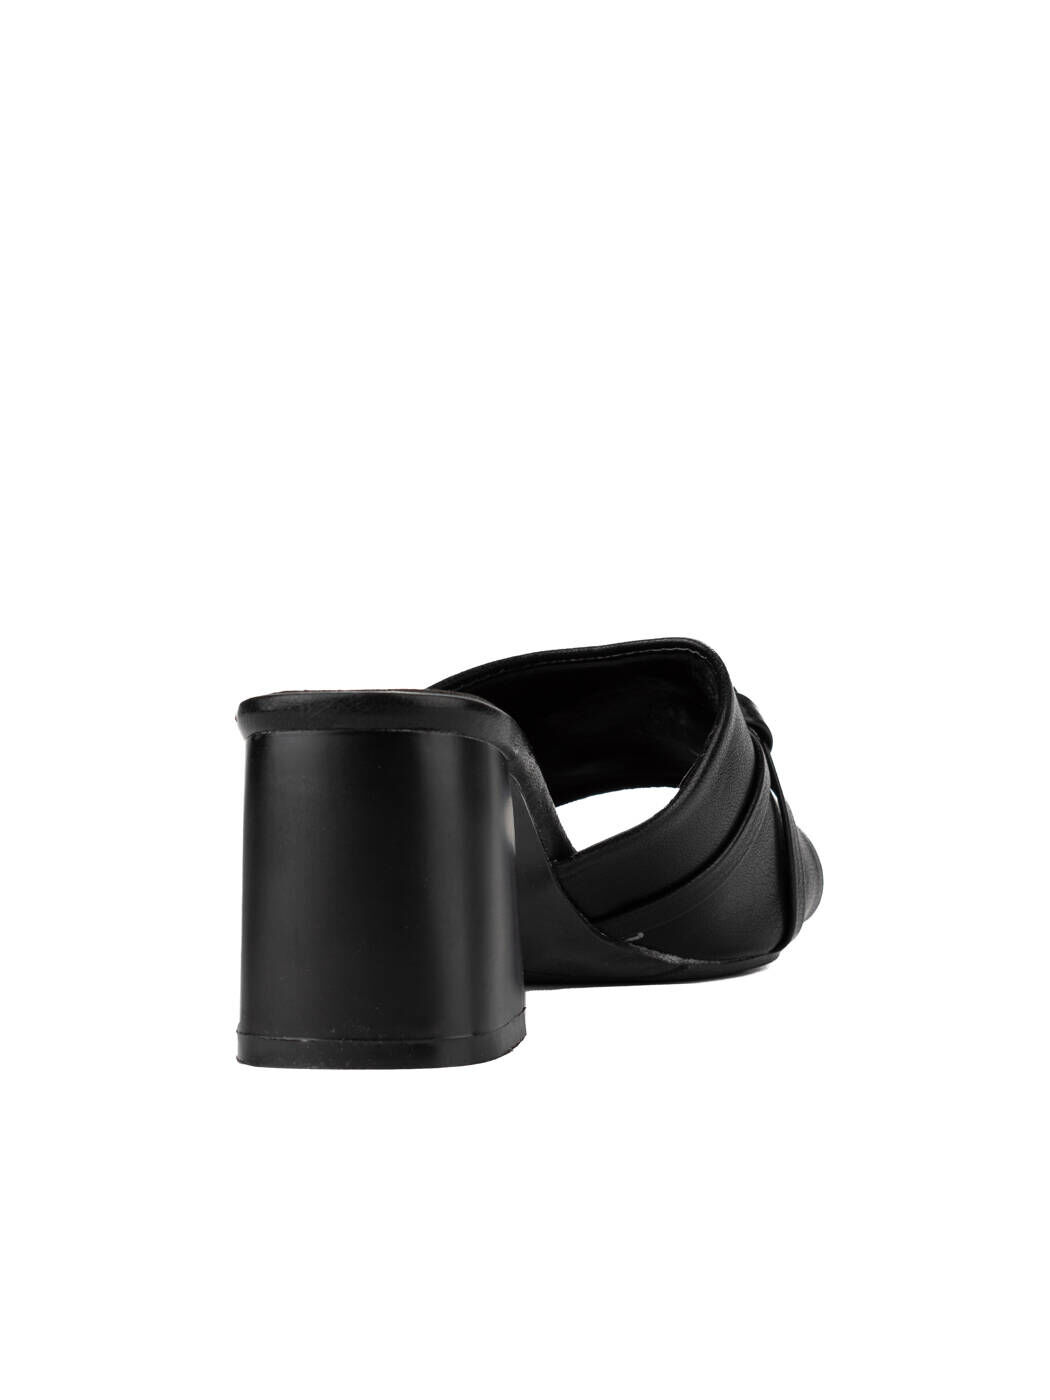 Шлепанцы женские черные экокожа каблук лето от производителя 1M вид 2